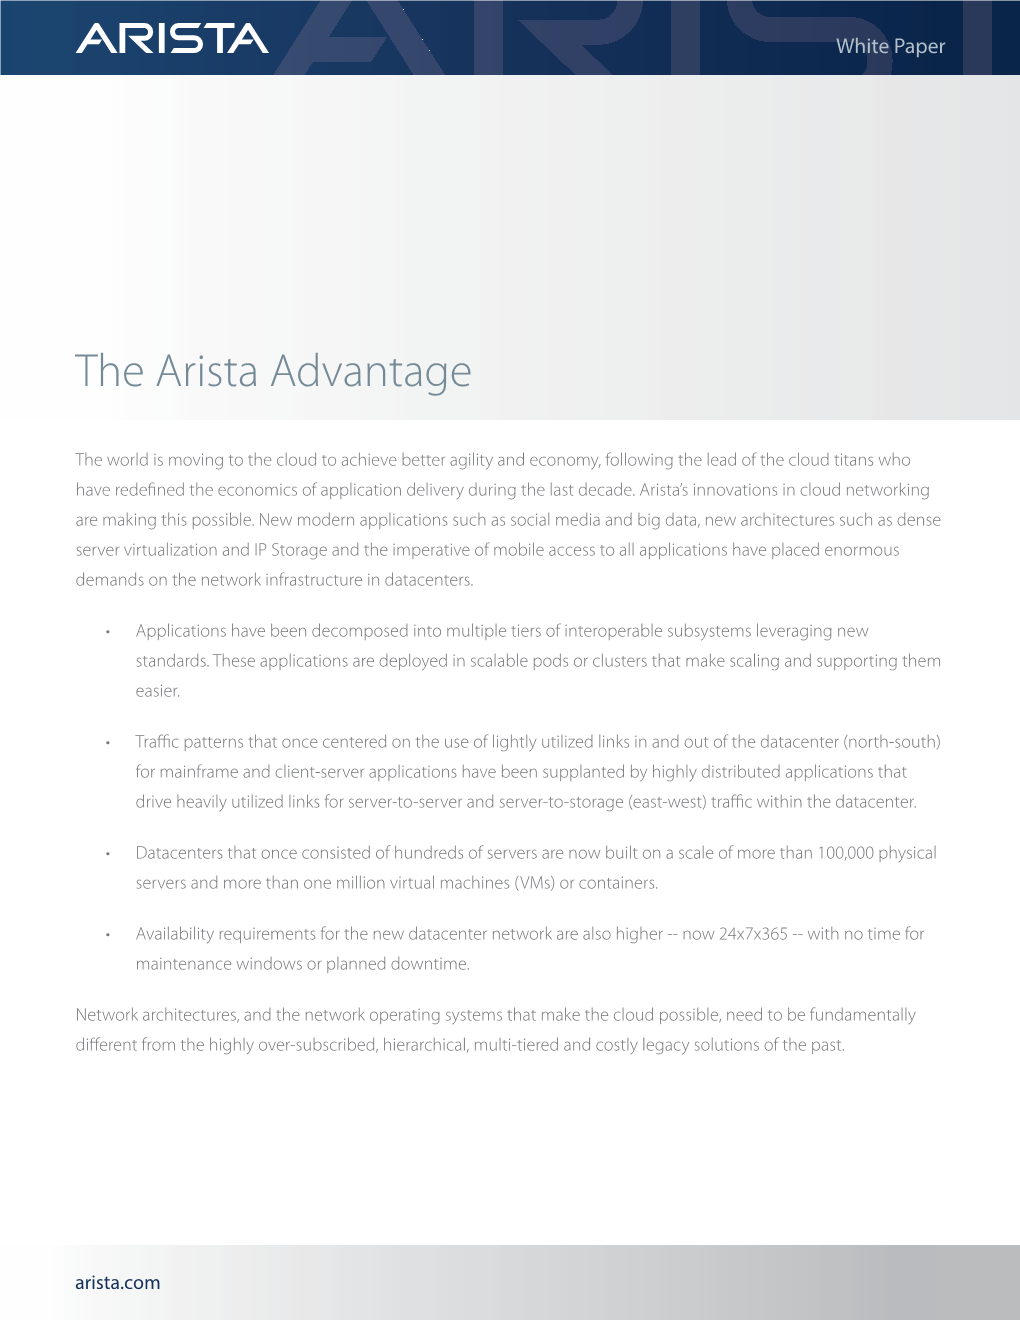 The Arista Advantage